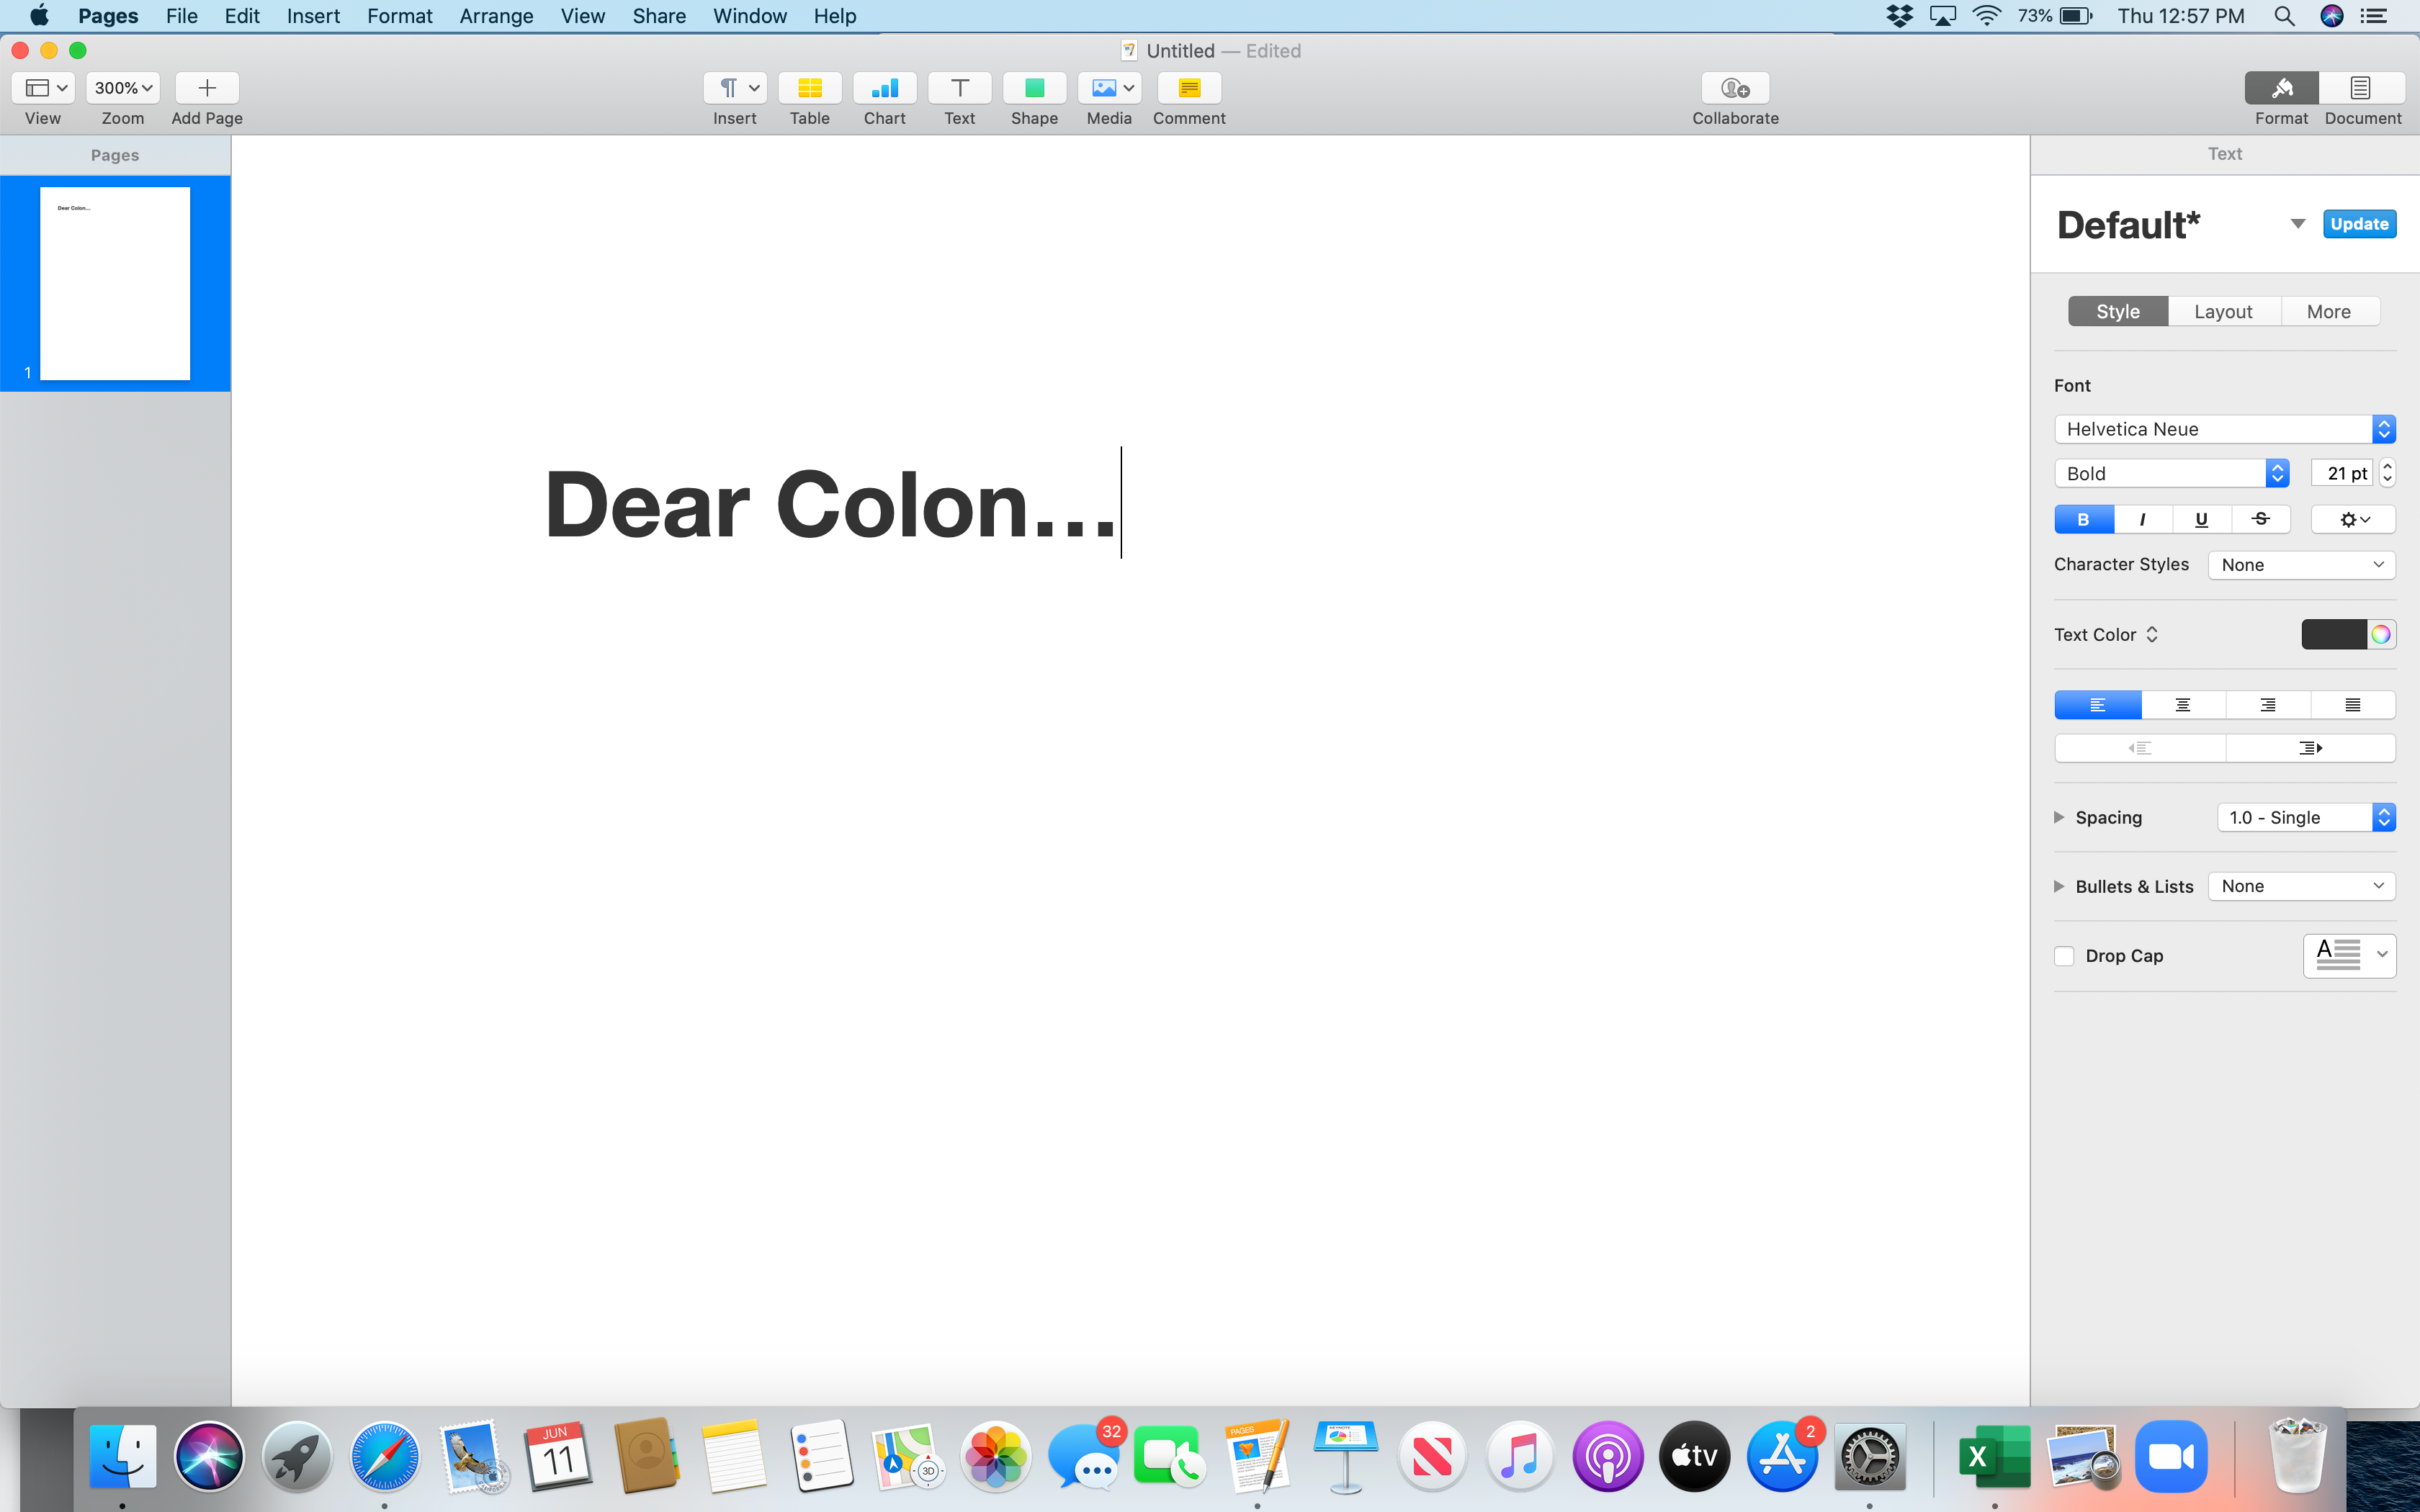 Dear Colon...